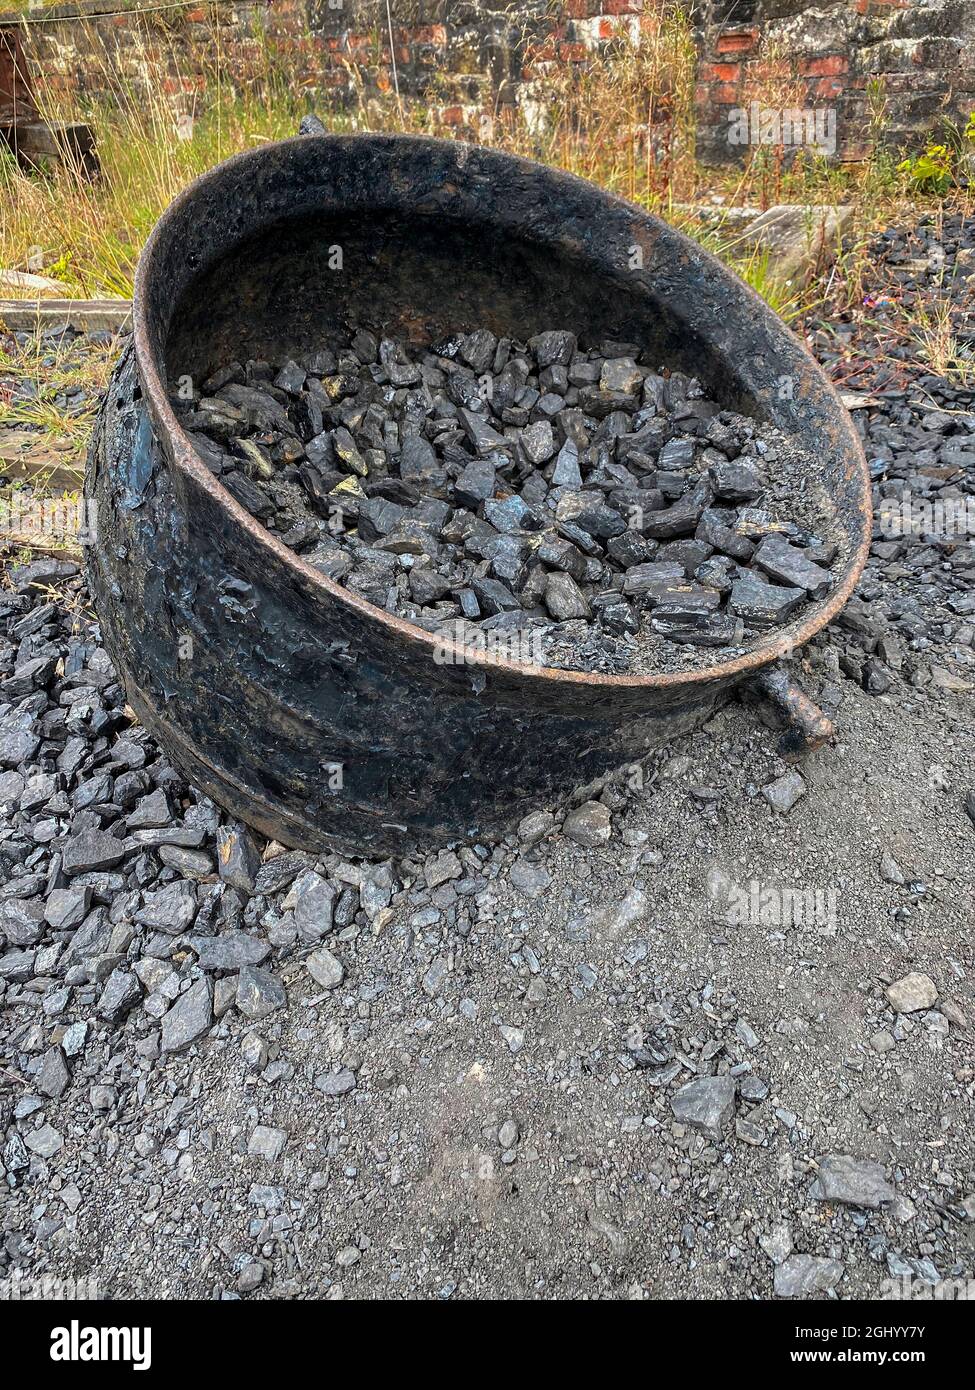 Décomposition industrielle - les vieux équipements d'extraction du charbon abandonnés rouillent lentement. Banque D'Images